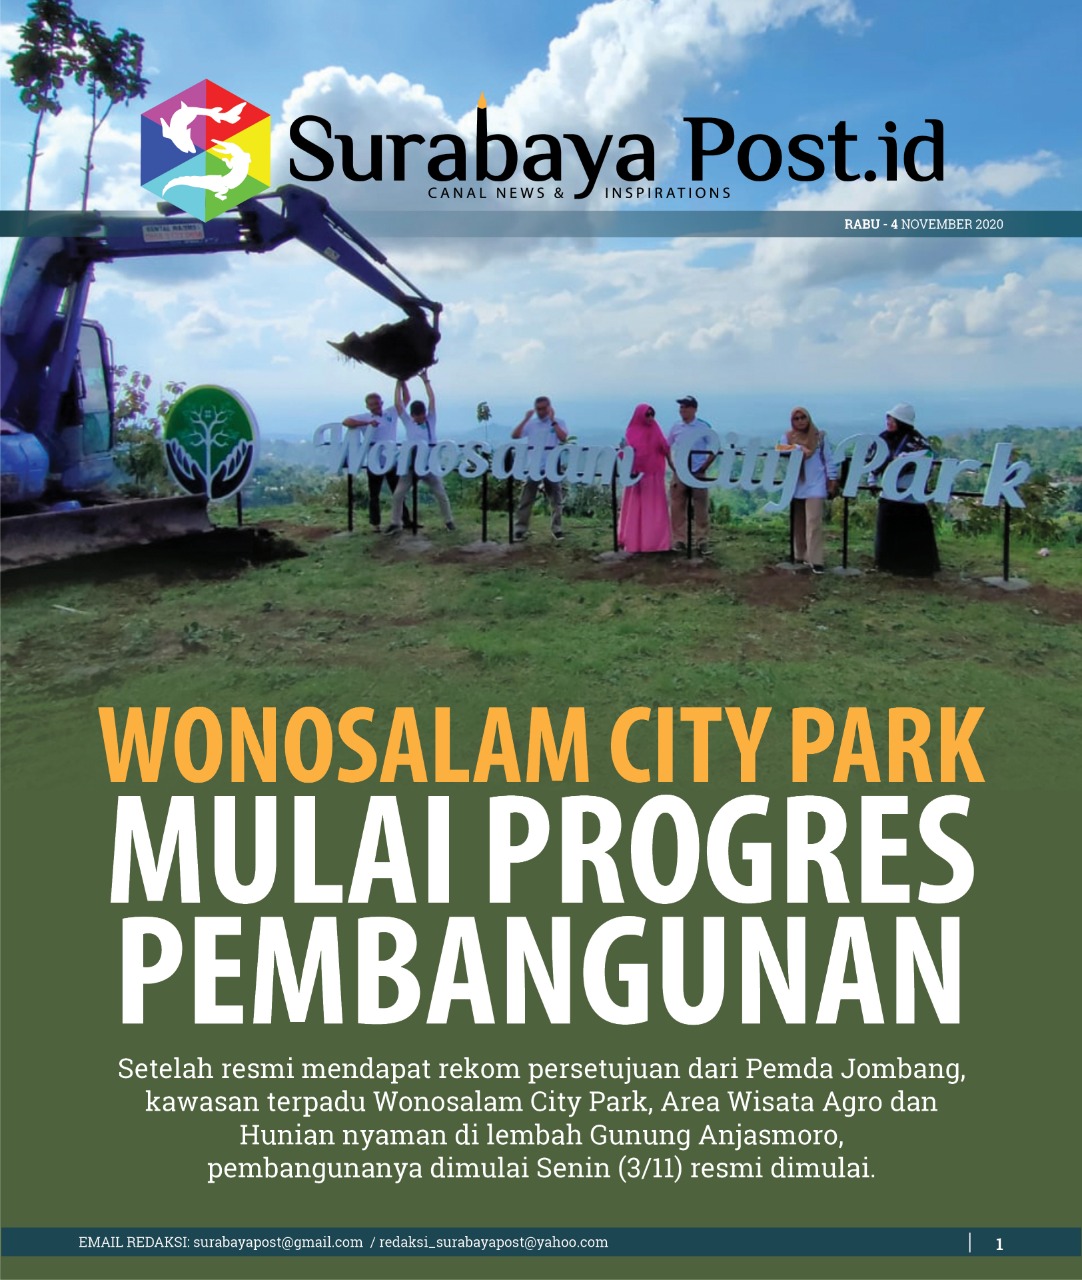 Wonosalam City Park Mulai Progress Pembangunan